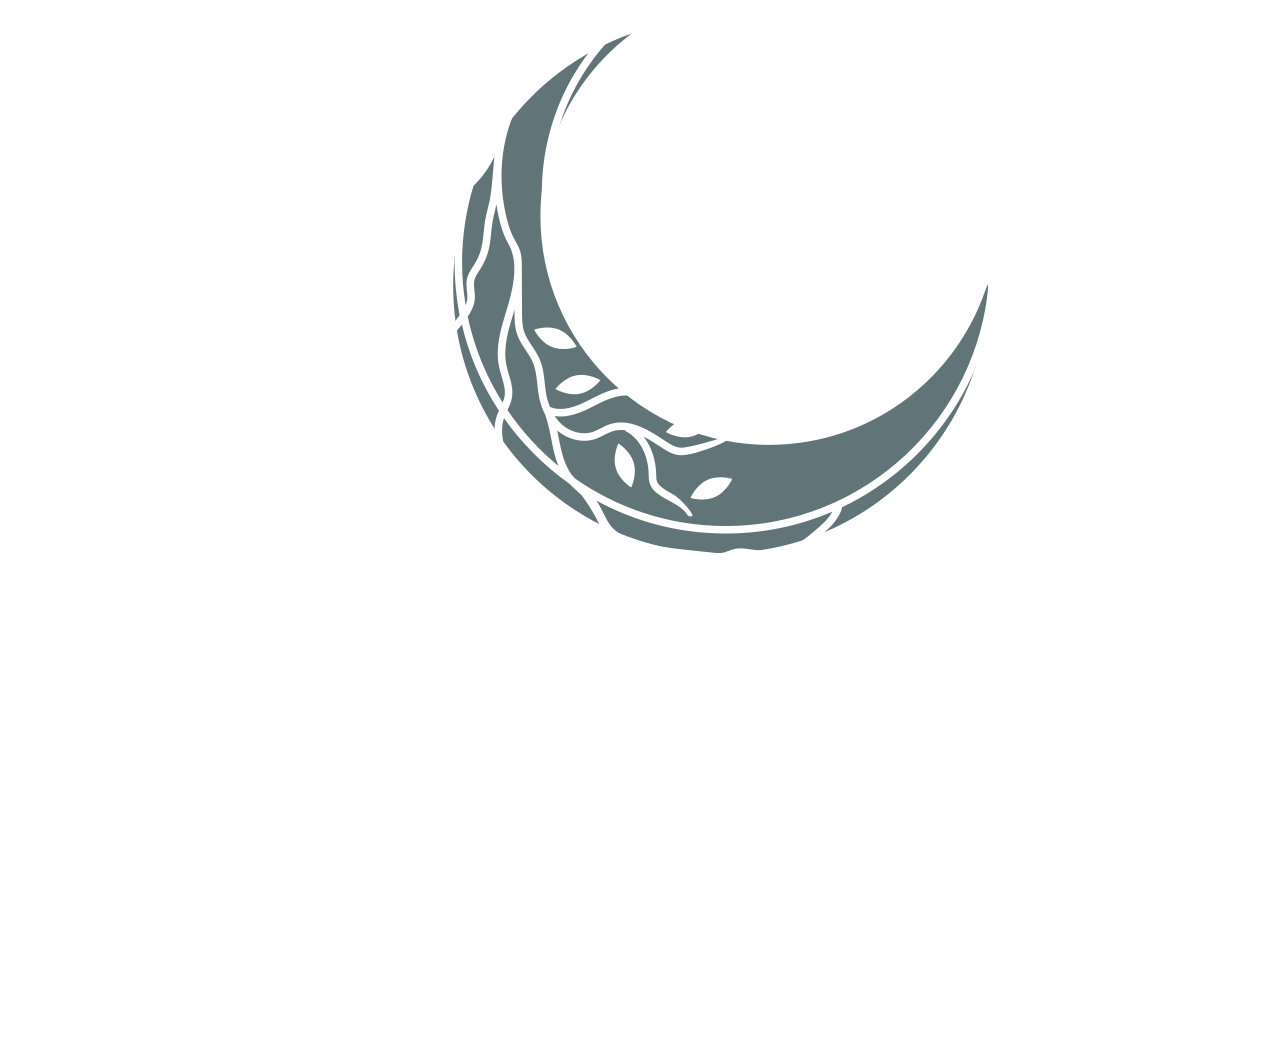 SL BOUTIQUE 's web page